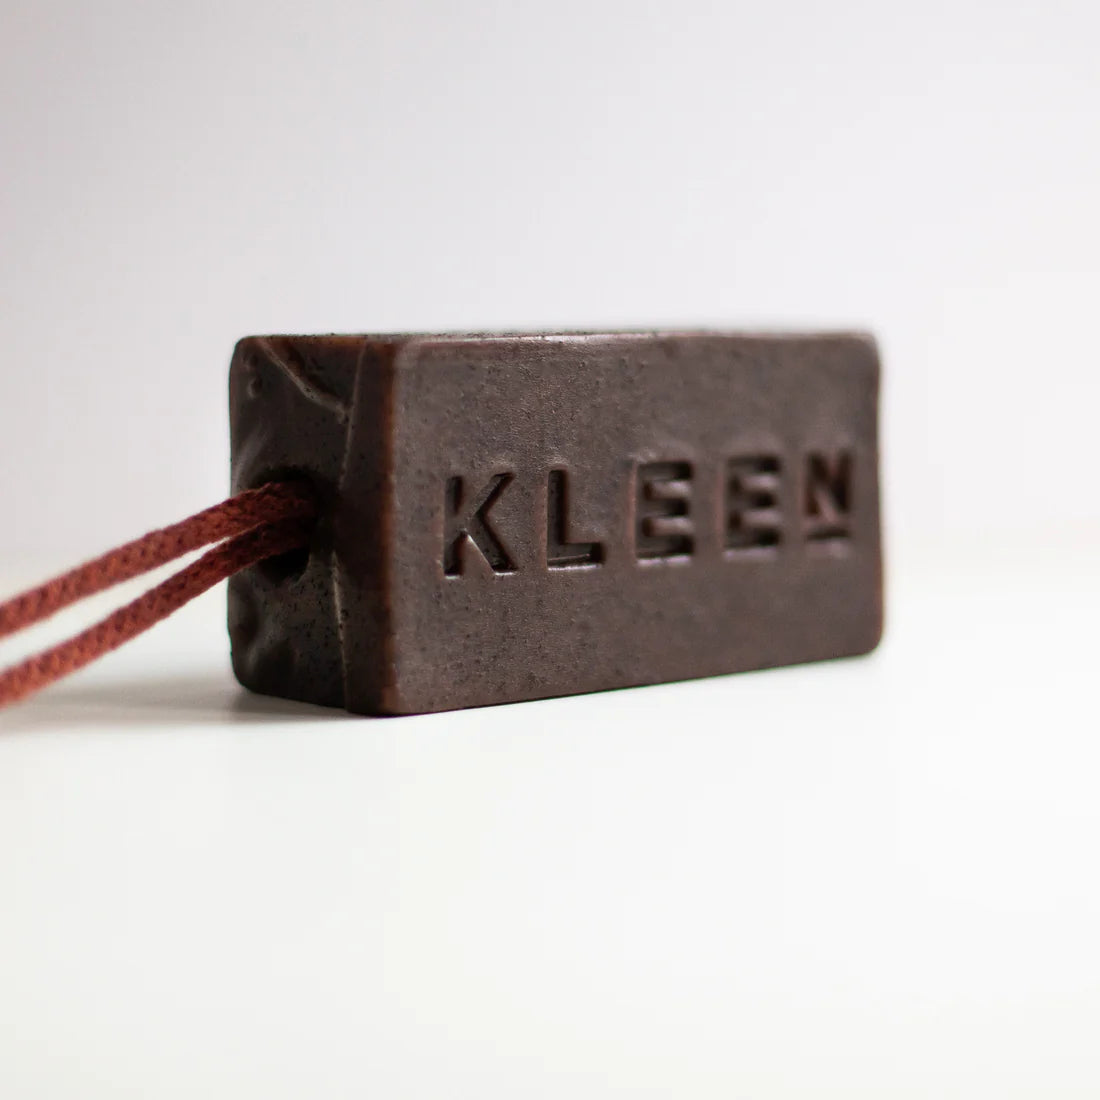 Kleen Soap - Tall, Dark & Handsome